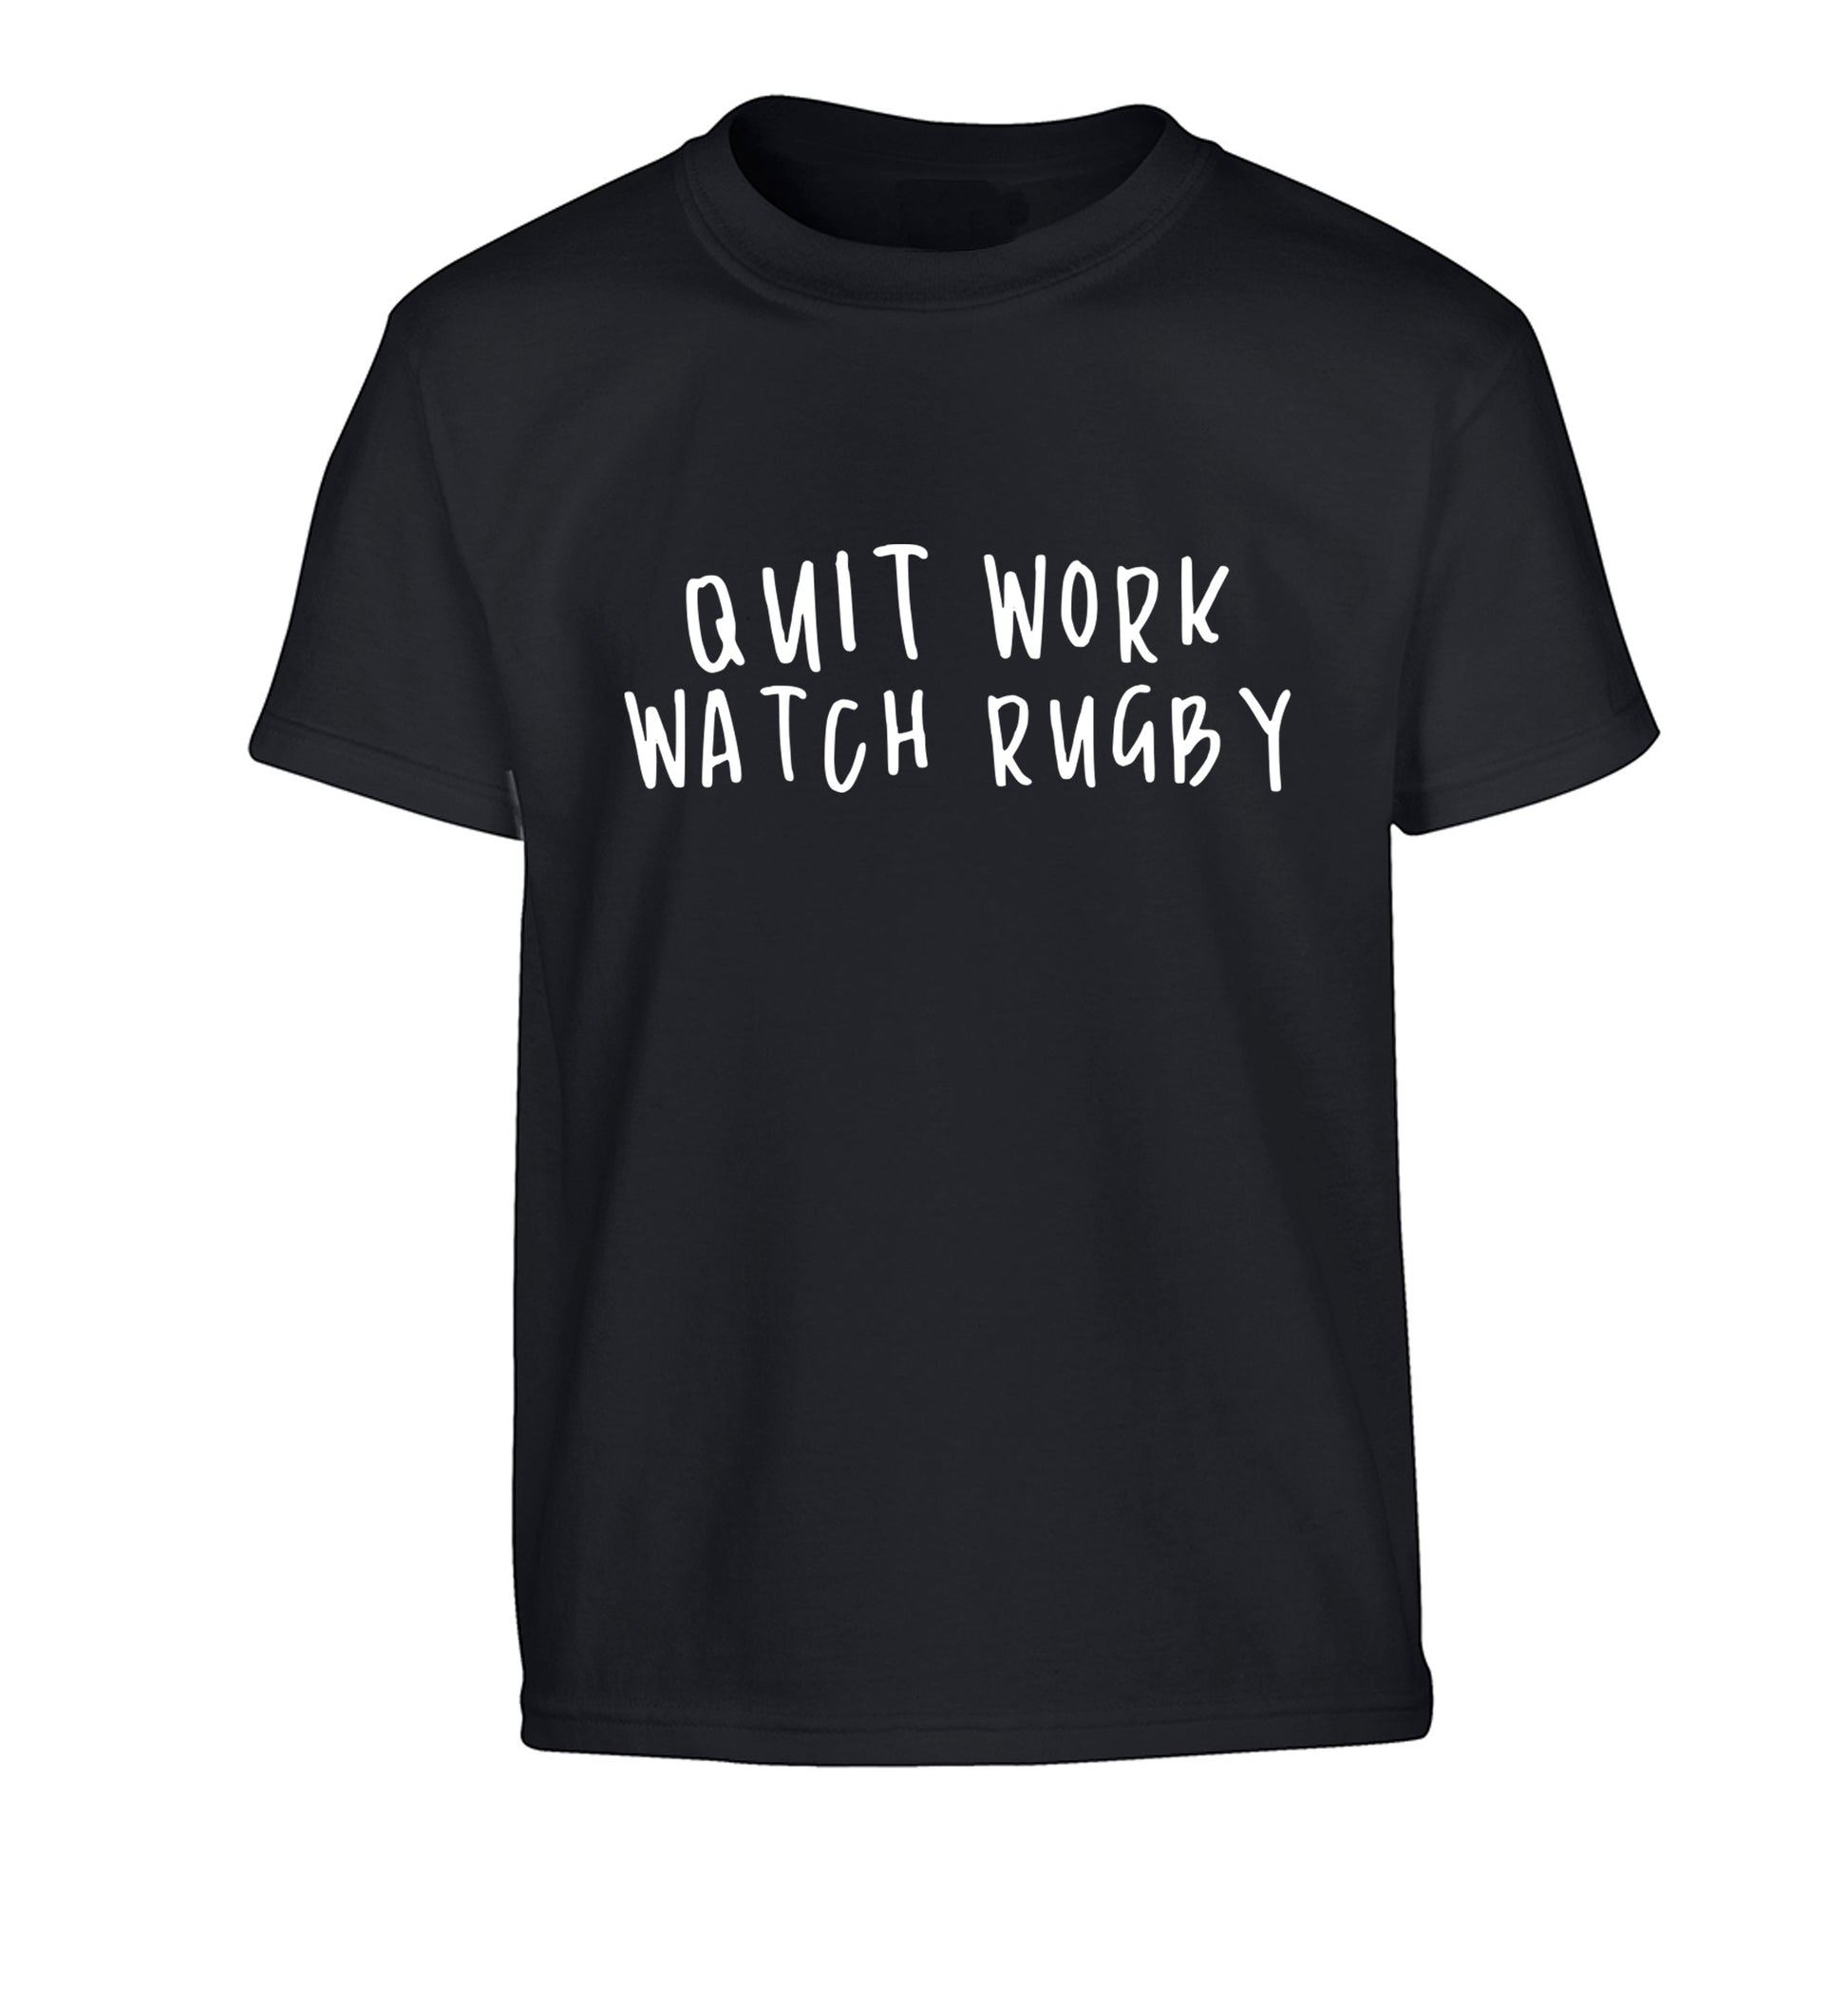 Quit work watch rugby Children's black Tshirt 12-13 Years